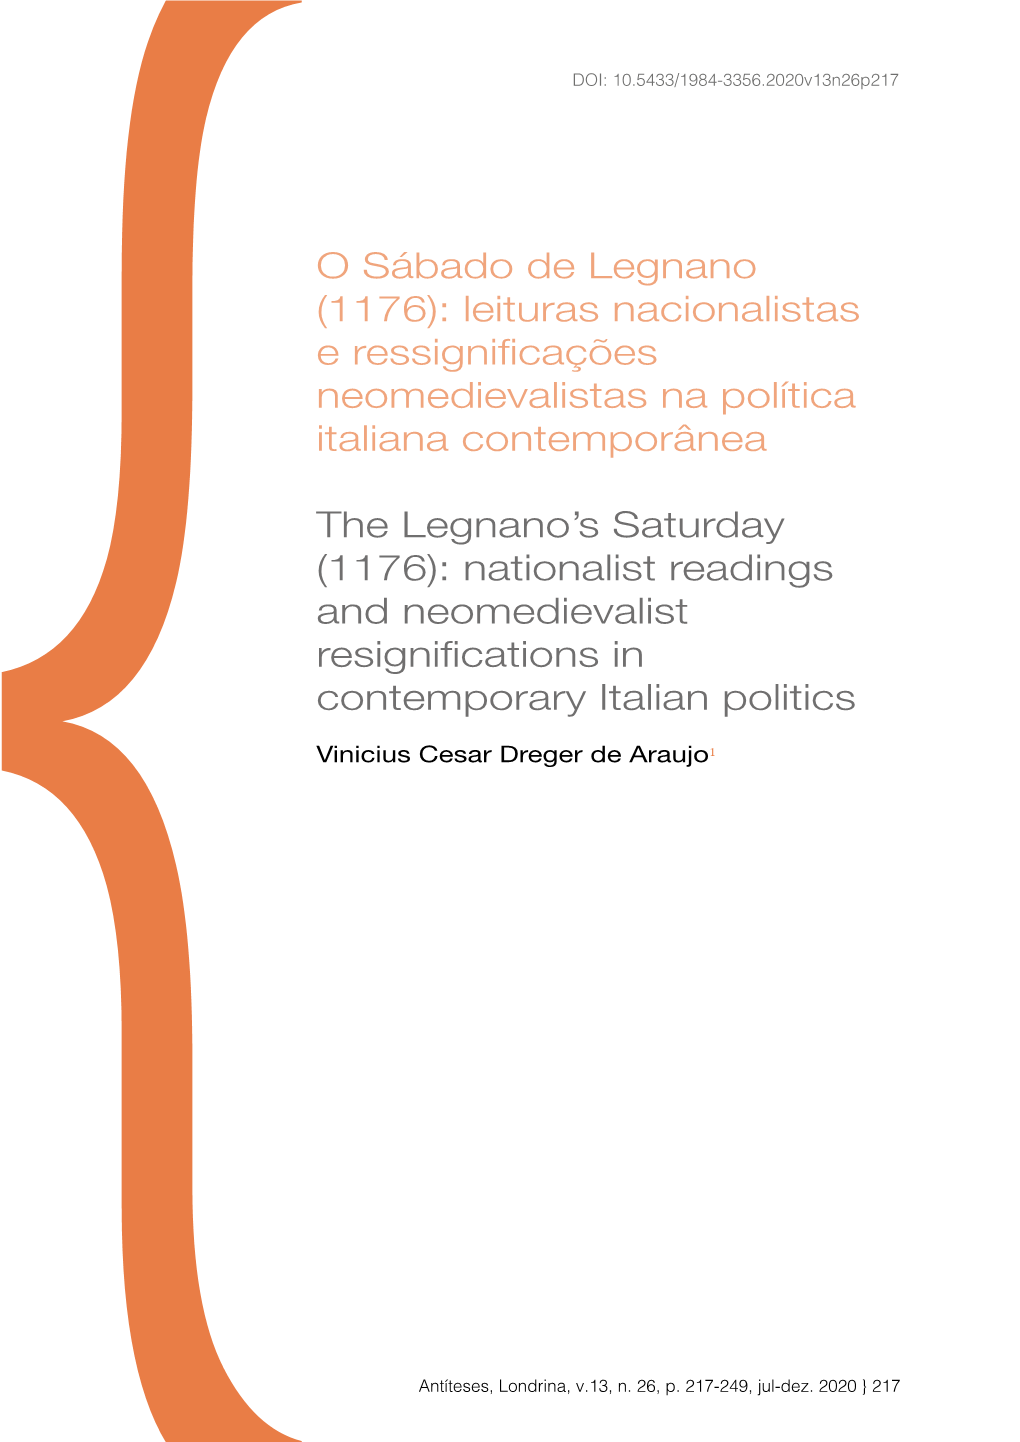 O Sábado De Legnano (1176): Leituras Nacionalistas E Ressignificações Neomedievalistas Na Política Italiana Contemporânea